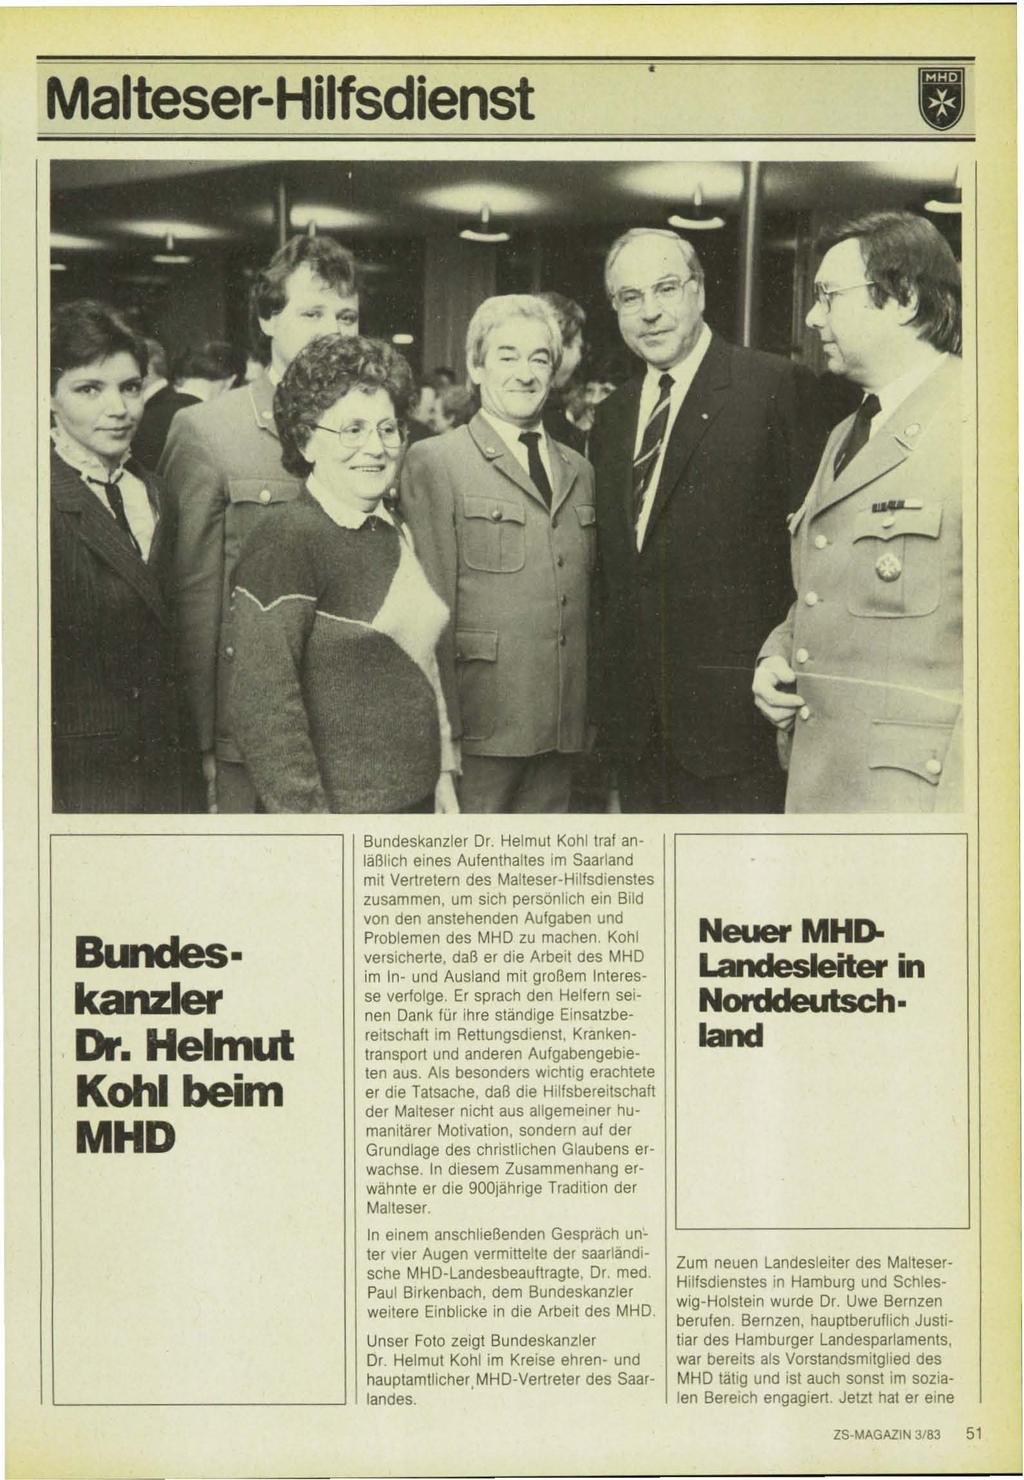 Malteser-Hilfsdienst Bundeskanzler Dr. Helmut Kohl beim MHD Bundeskanzler Dr.